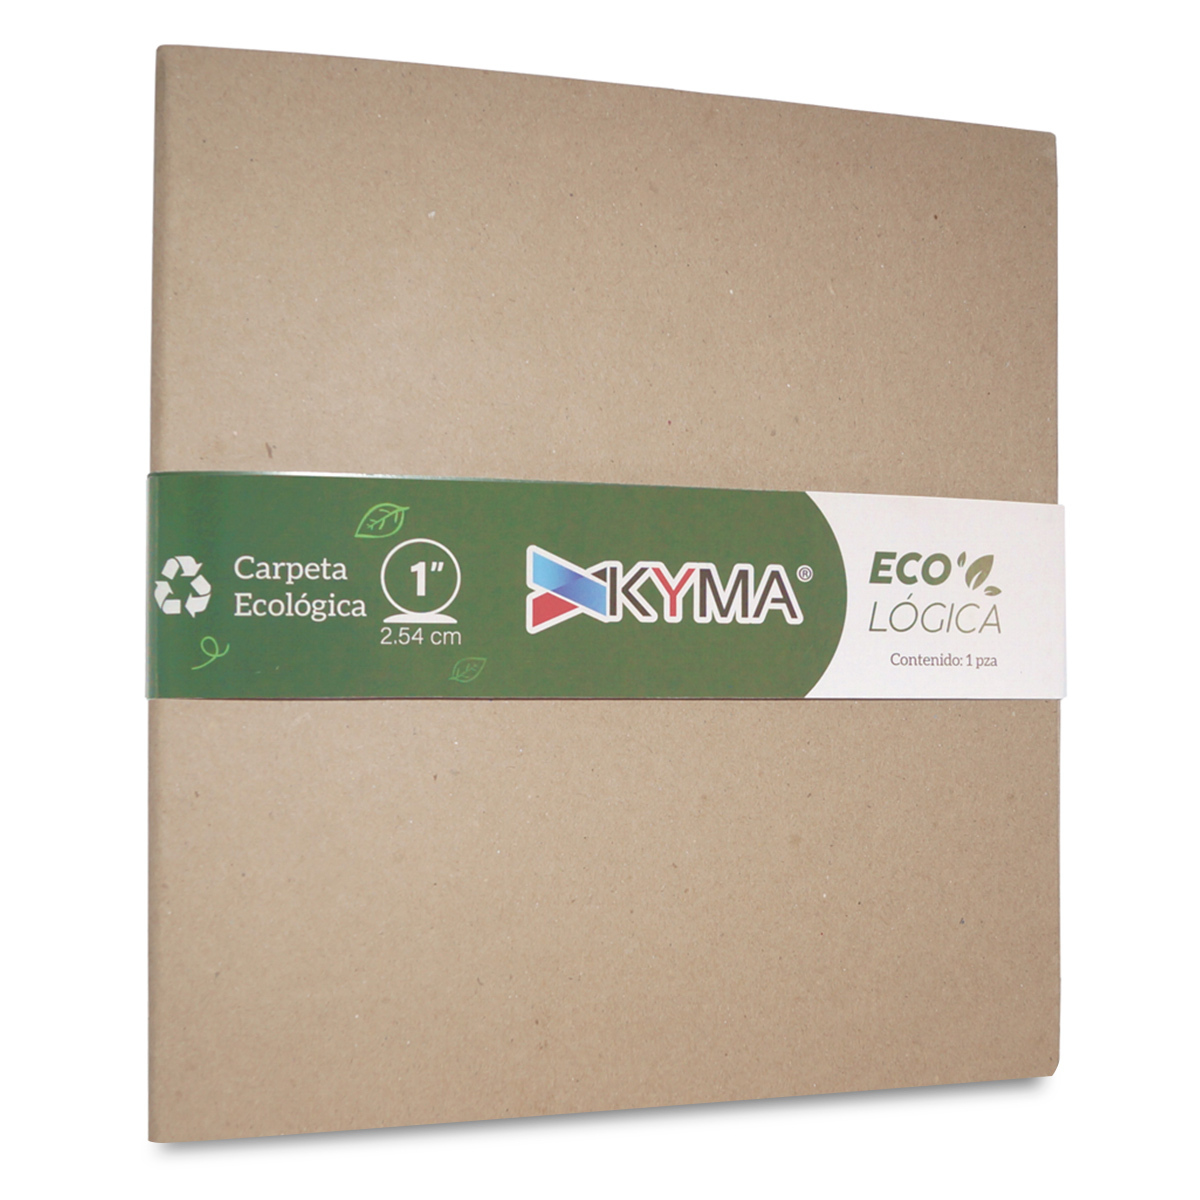 Carpeta Carta con Arillo en O de 1 pulg. Kyma Ecológica / Café